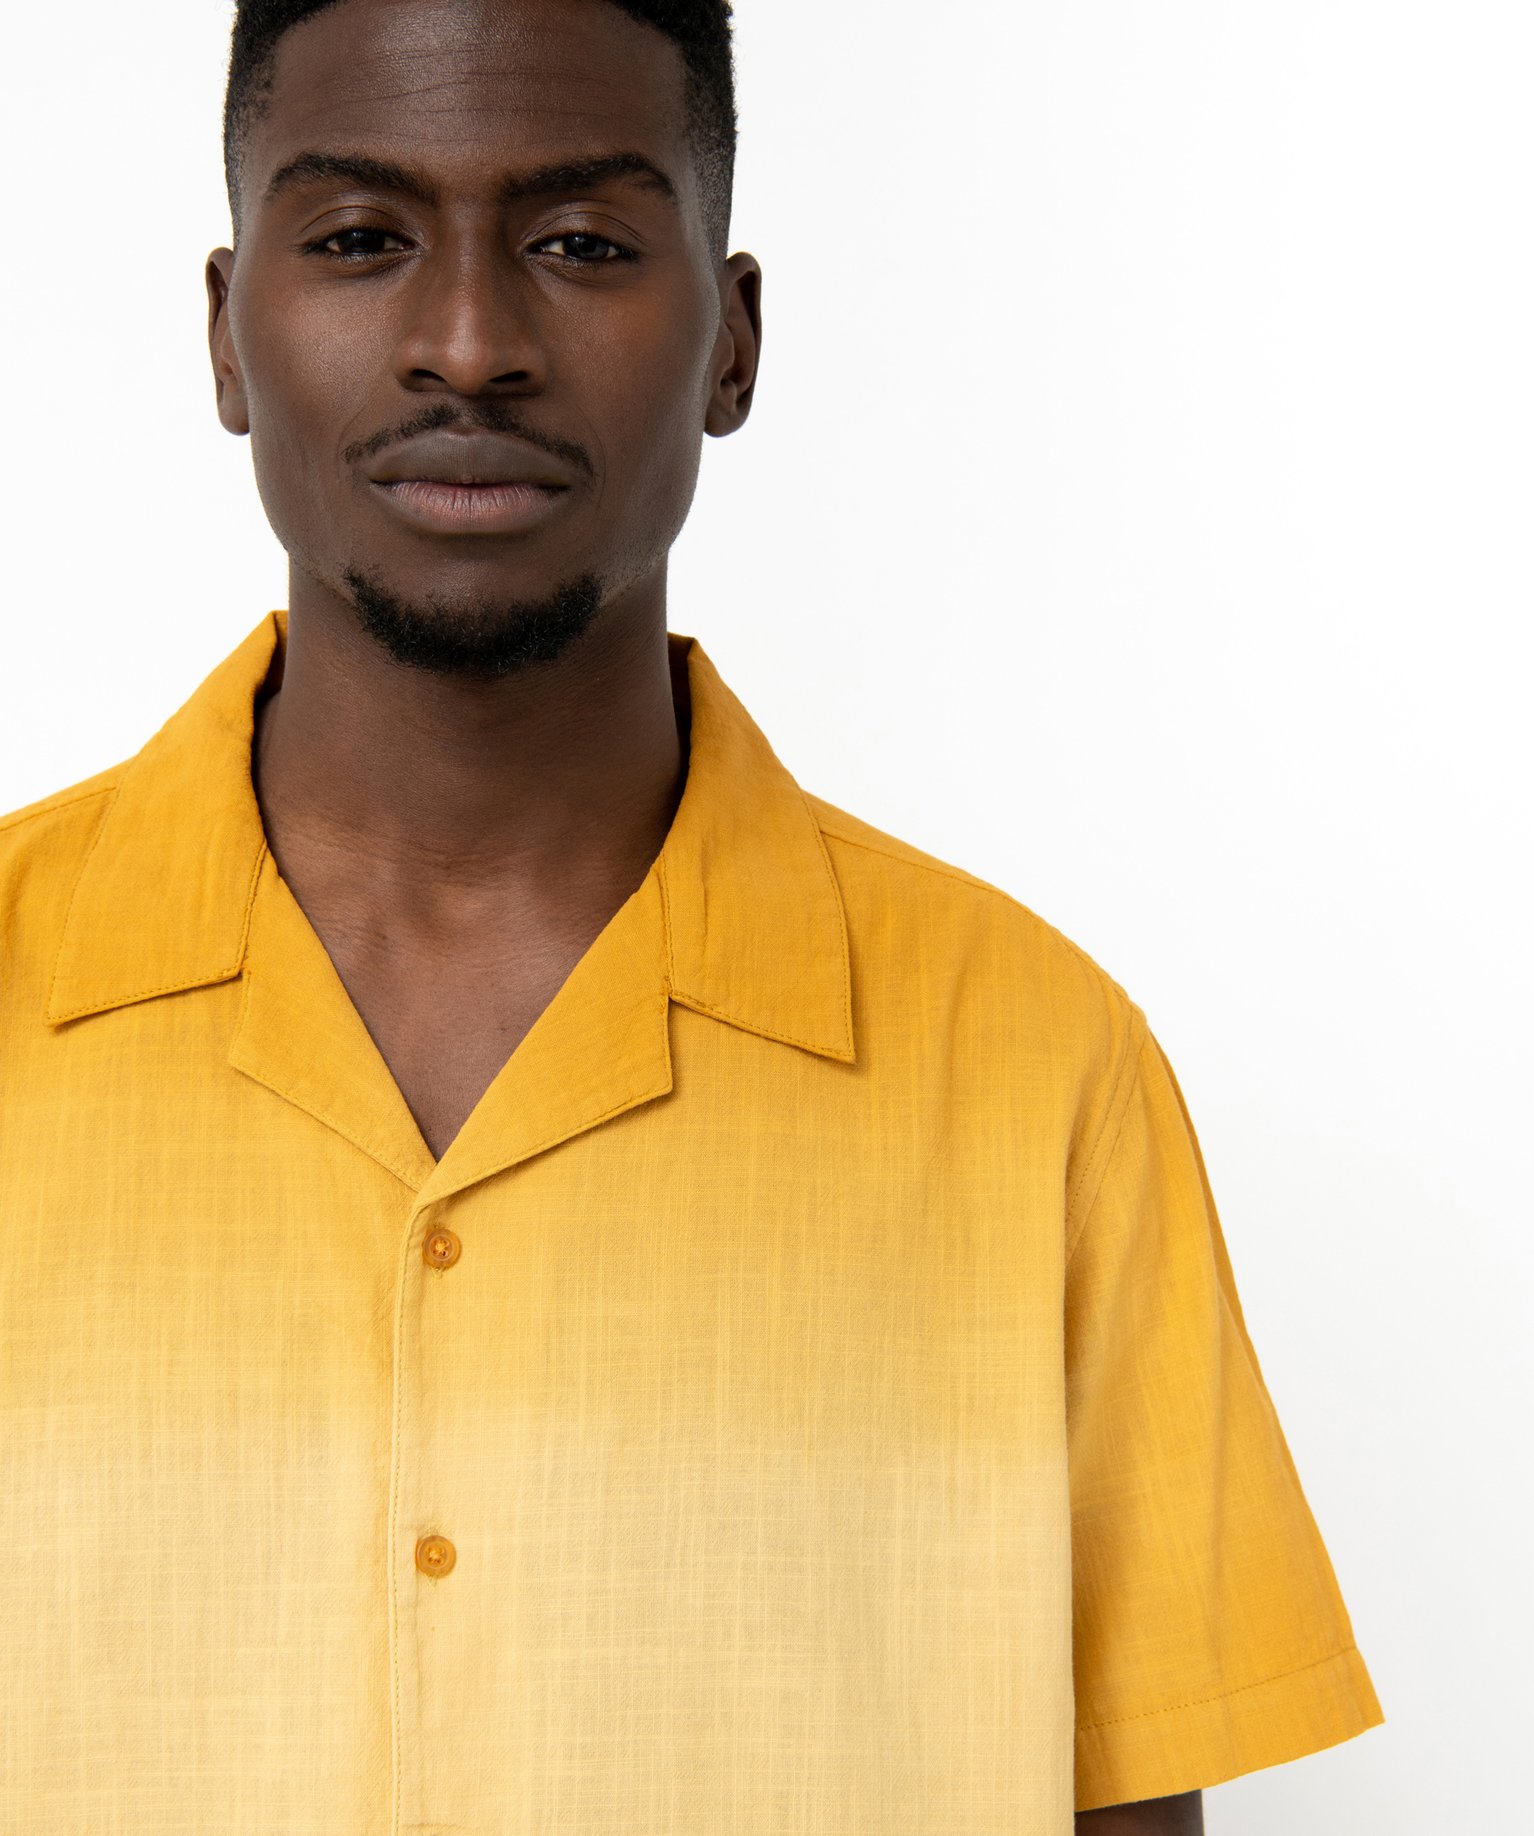 chemise a manches courtes avec col cubain homme jaune chemise manches courtes